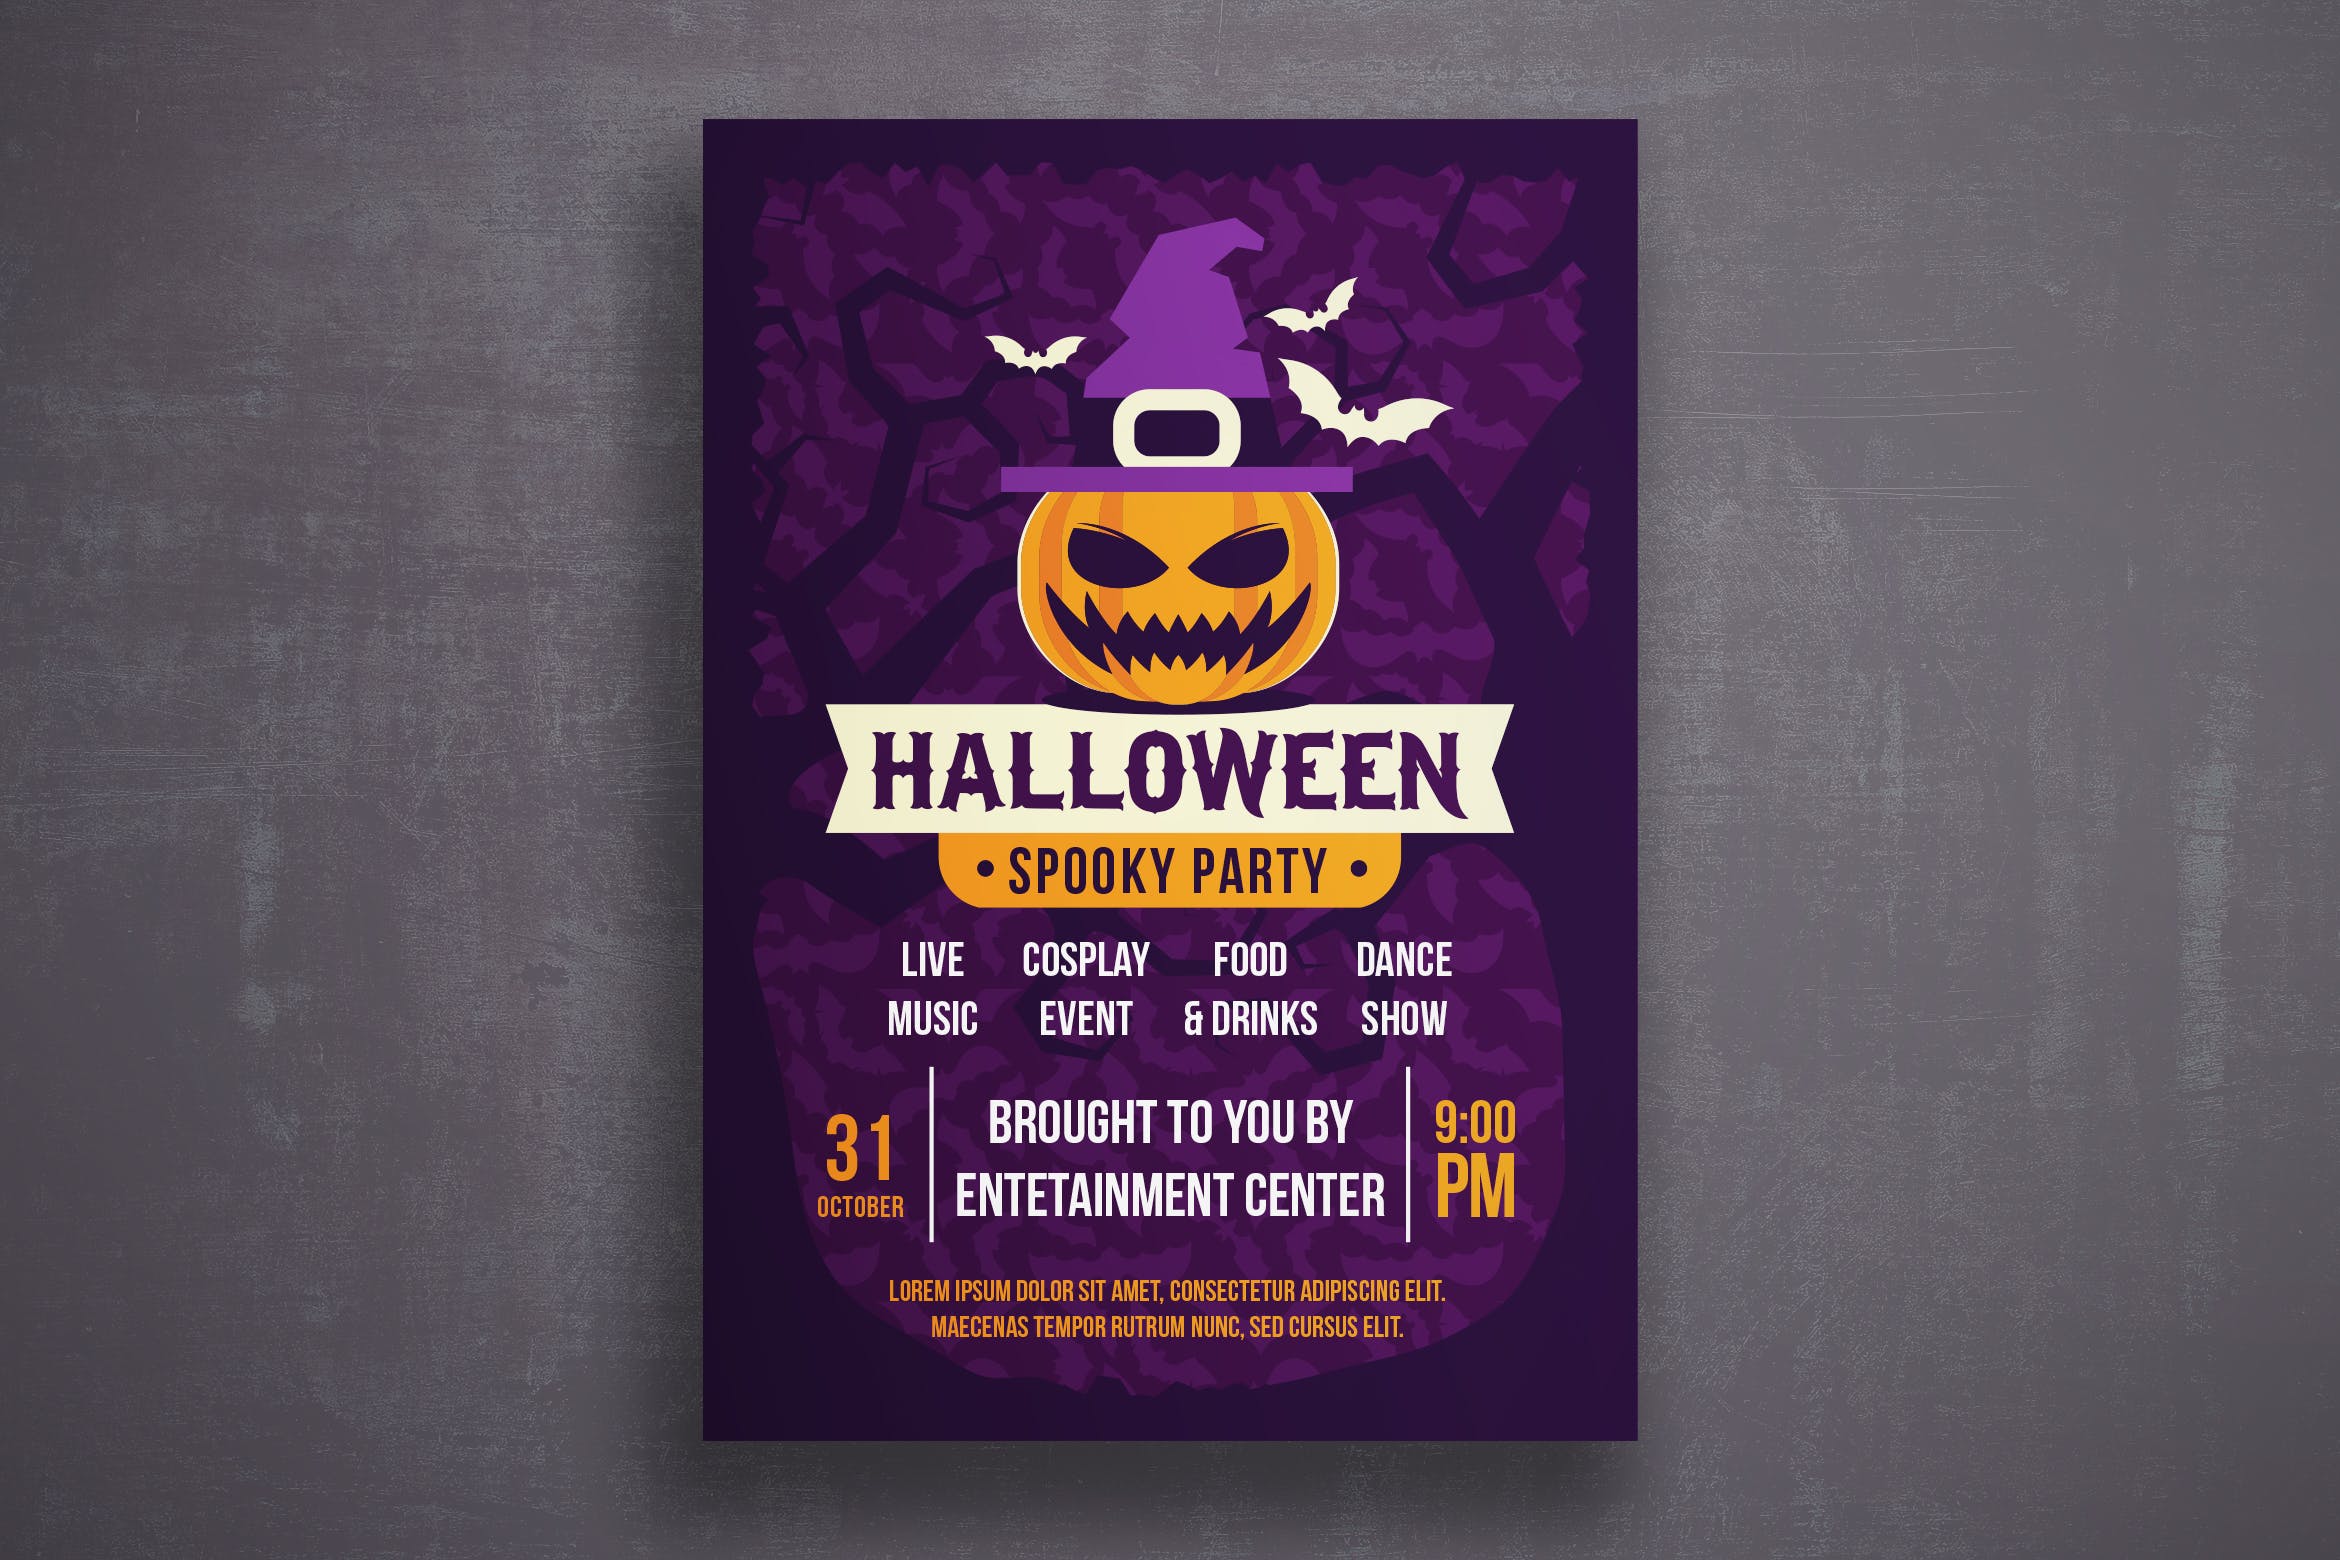 万圣节恐怖之夜活动邀请海报传单蚂蚁素材精选PSD模板v4 Halloween flyer template插图